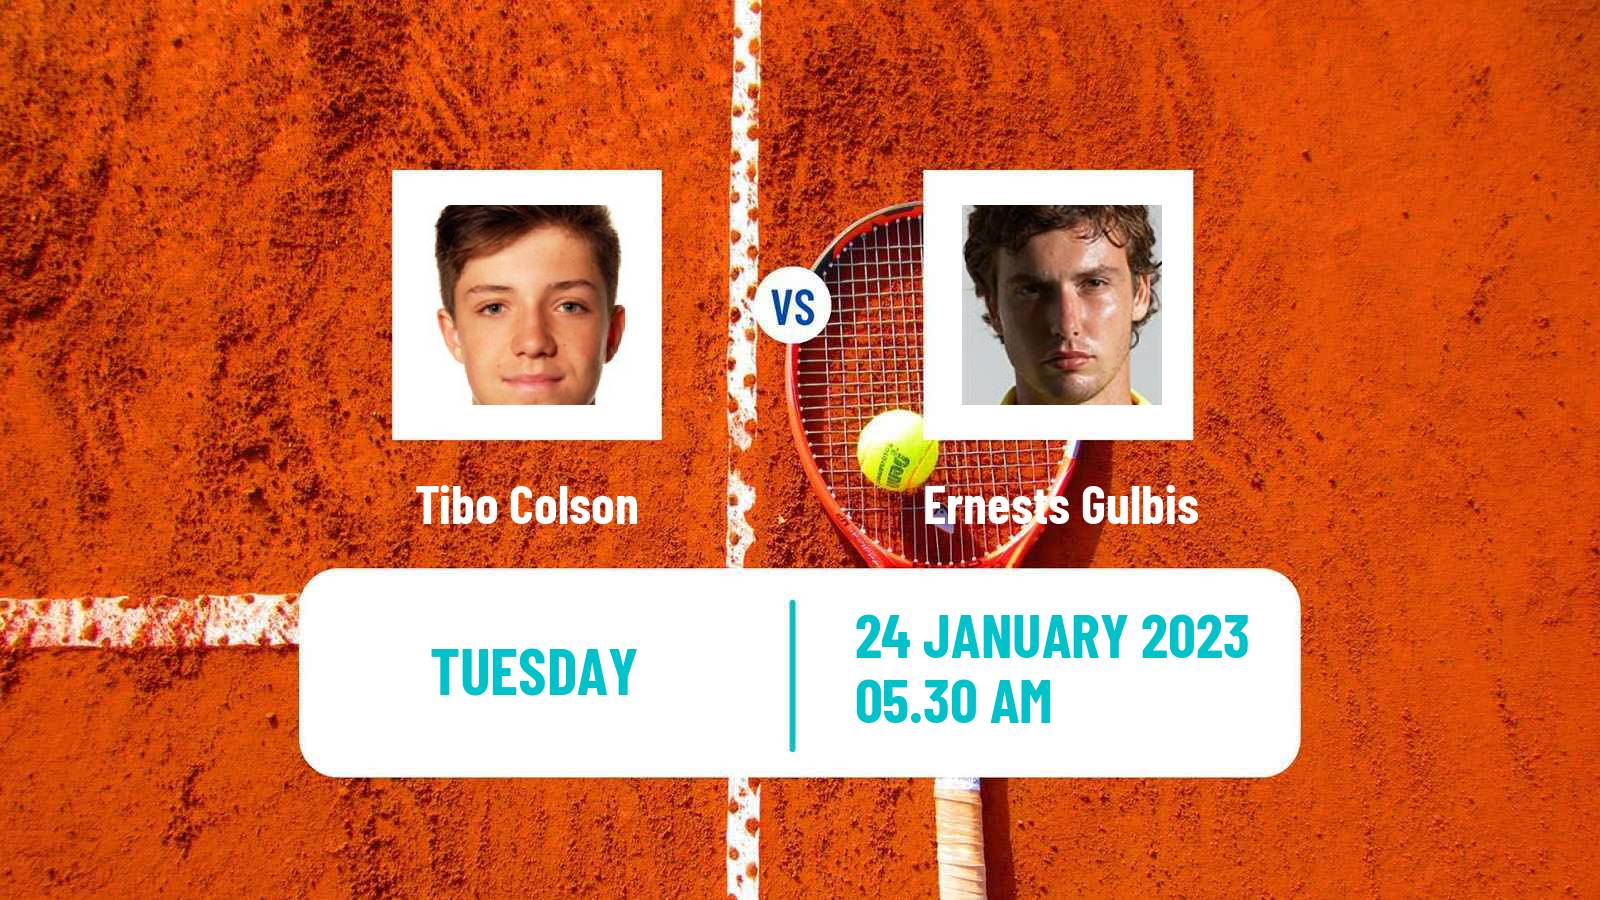 Tennis ATP Challenger Tibo Colson - Ernests Gulbis